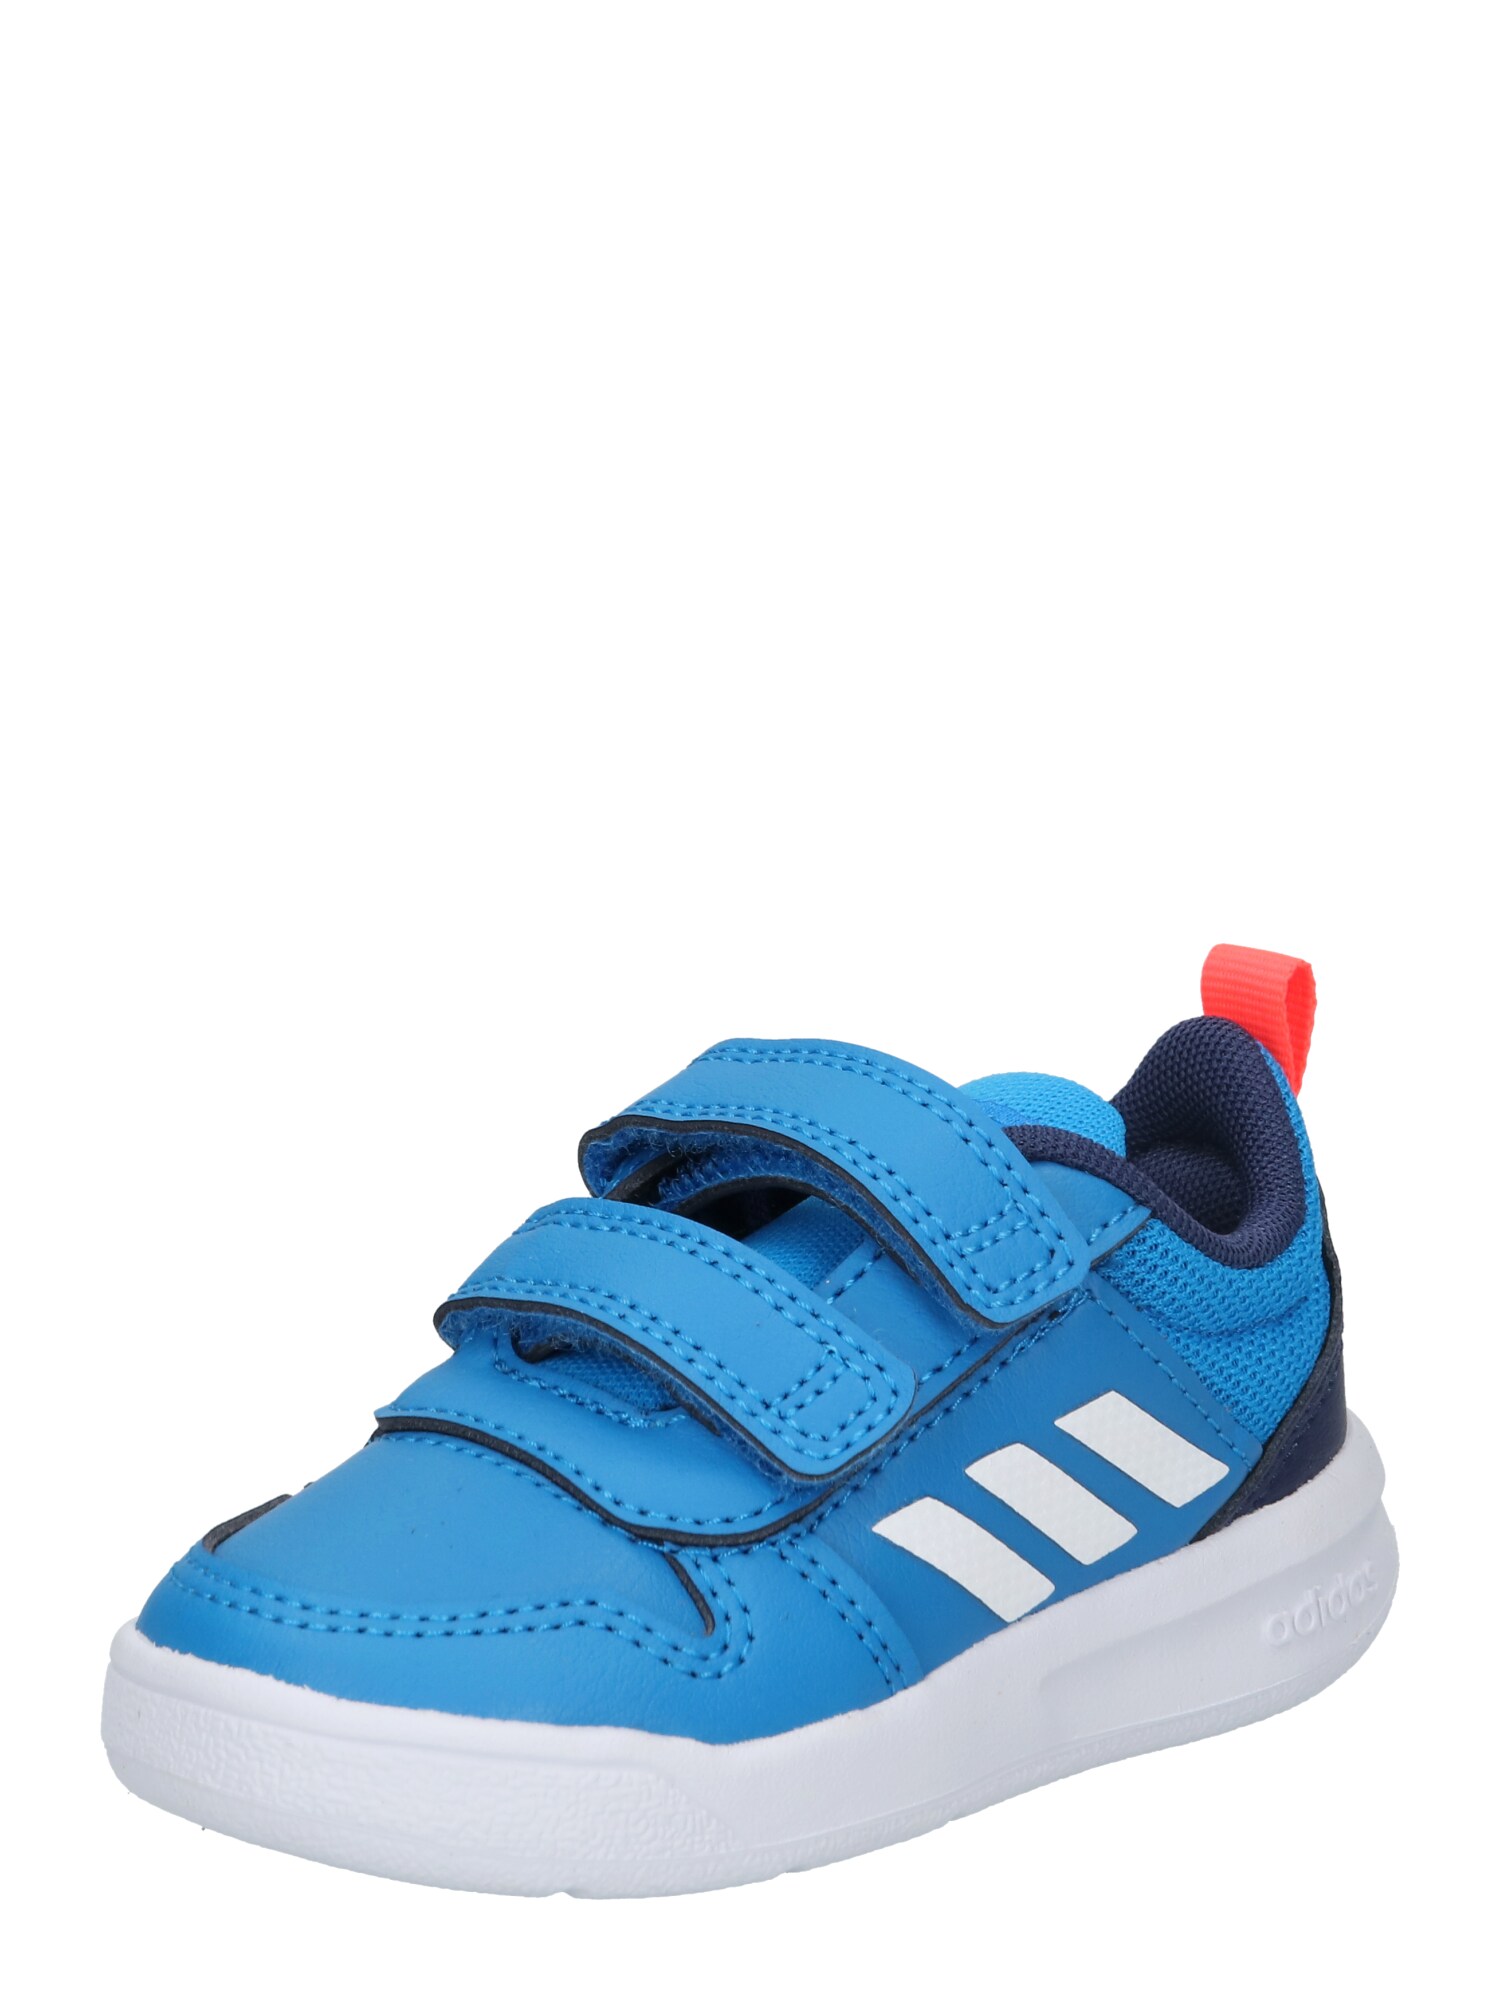 ADIDAS PERFORMANCE Sportiniai batai 'Tensaur' mėlyna / balta / tamsiai mėlyna jūros spalva